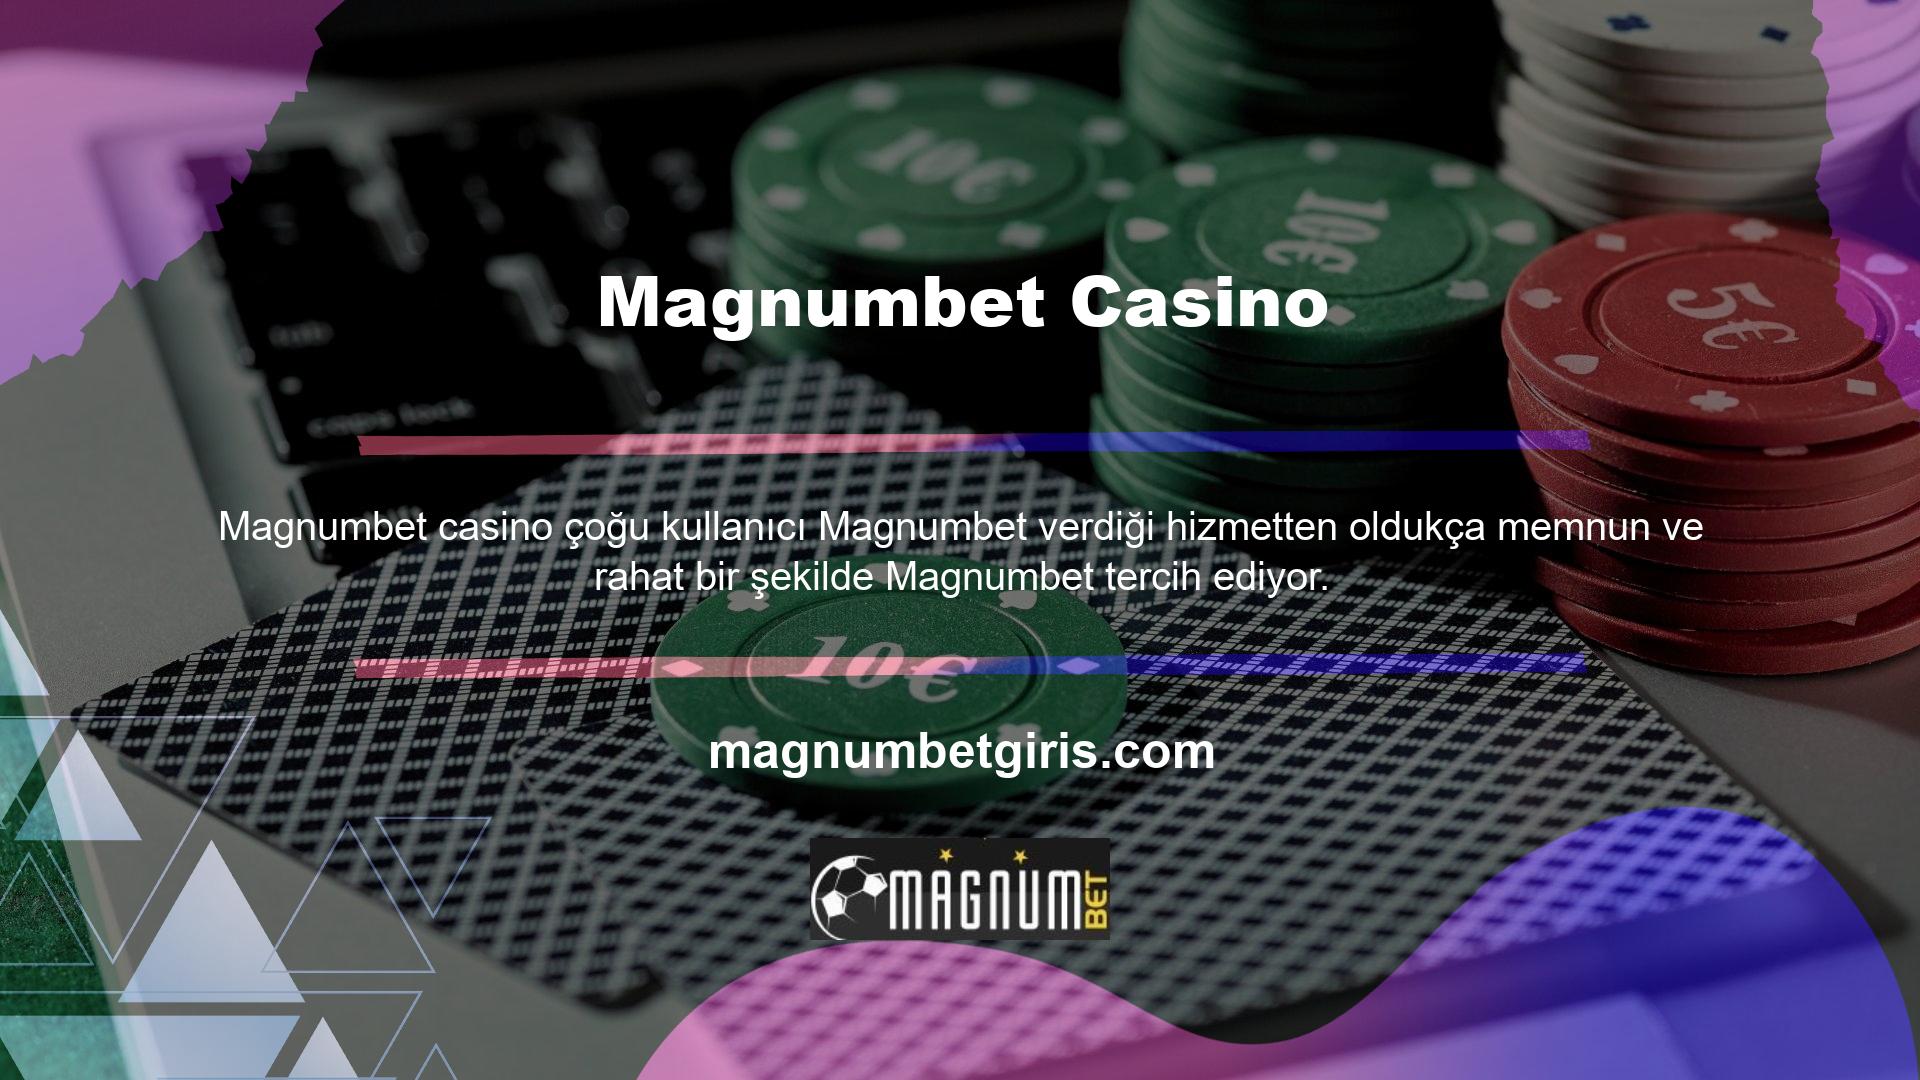 Magnumbet, sekiz yıl önceki lansmanından bu yana sürekli olarak en yüksek kullanıcı memnuniyetini sürdürdü